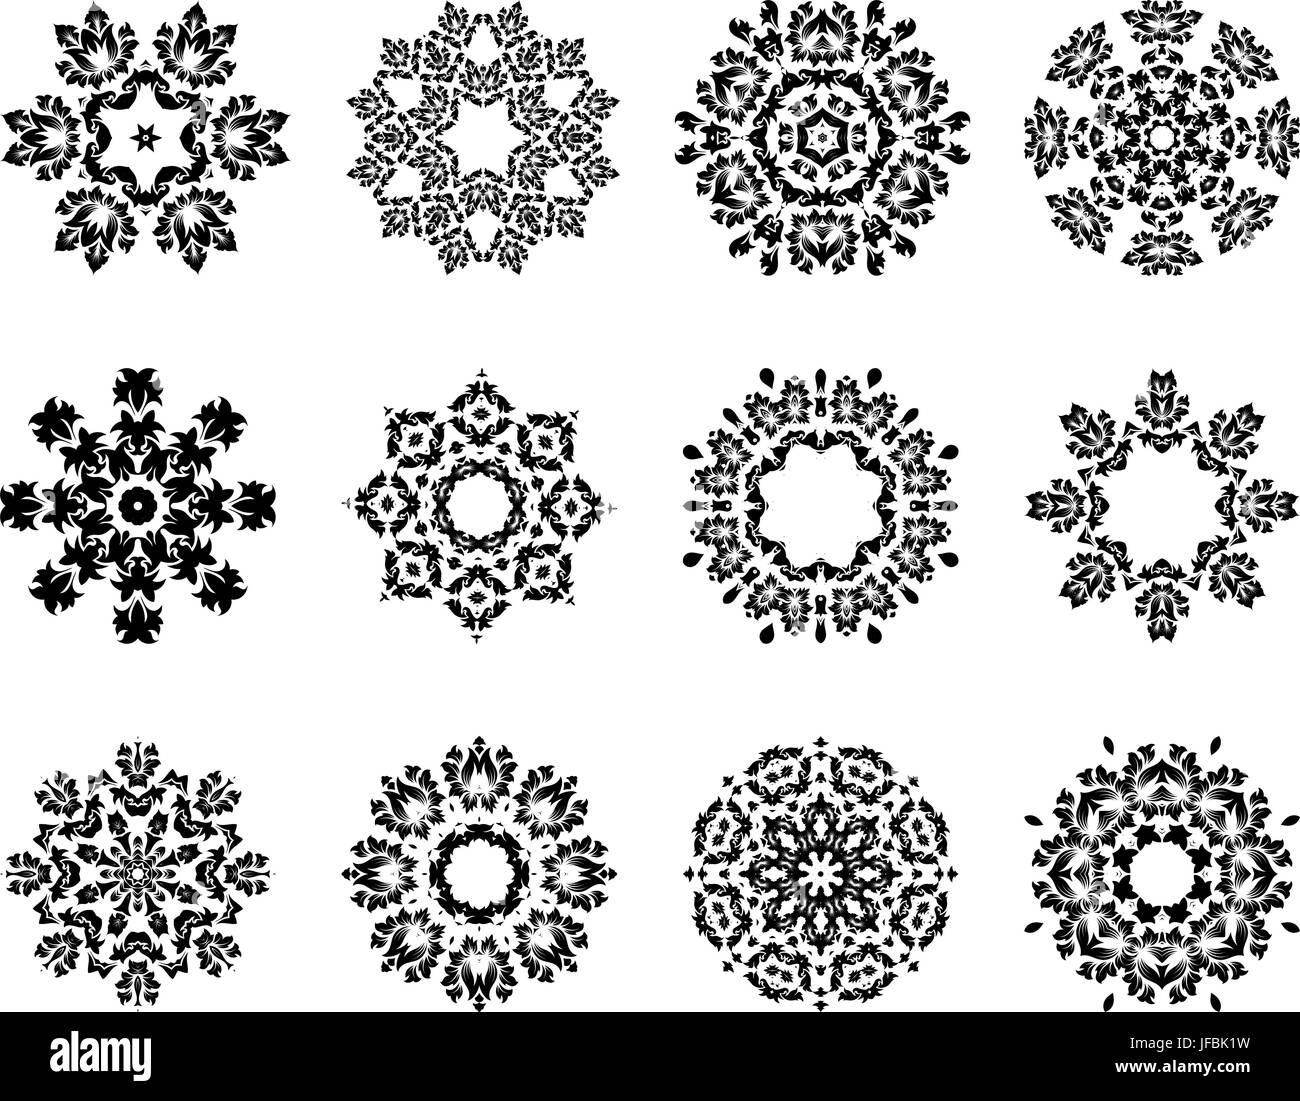 12 Snowflakes Stock Vector